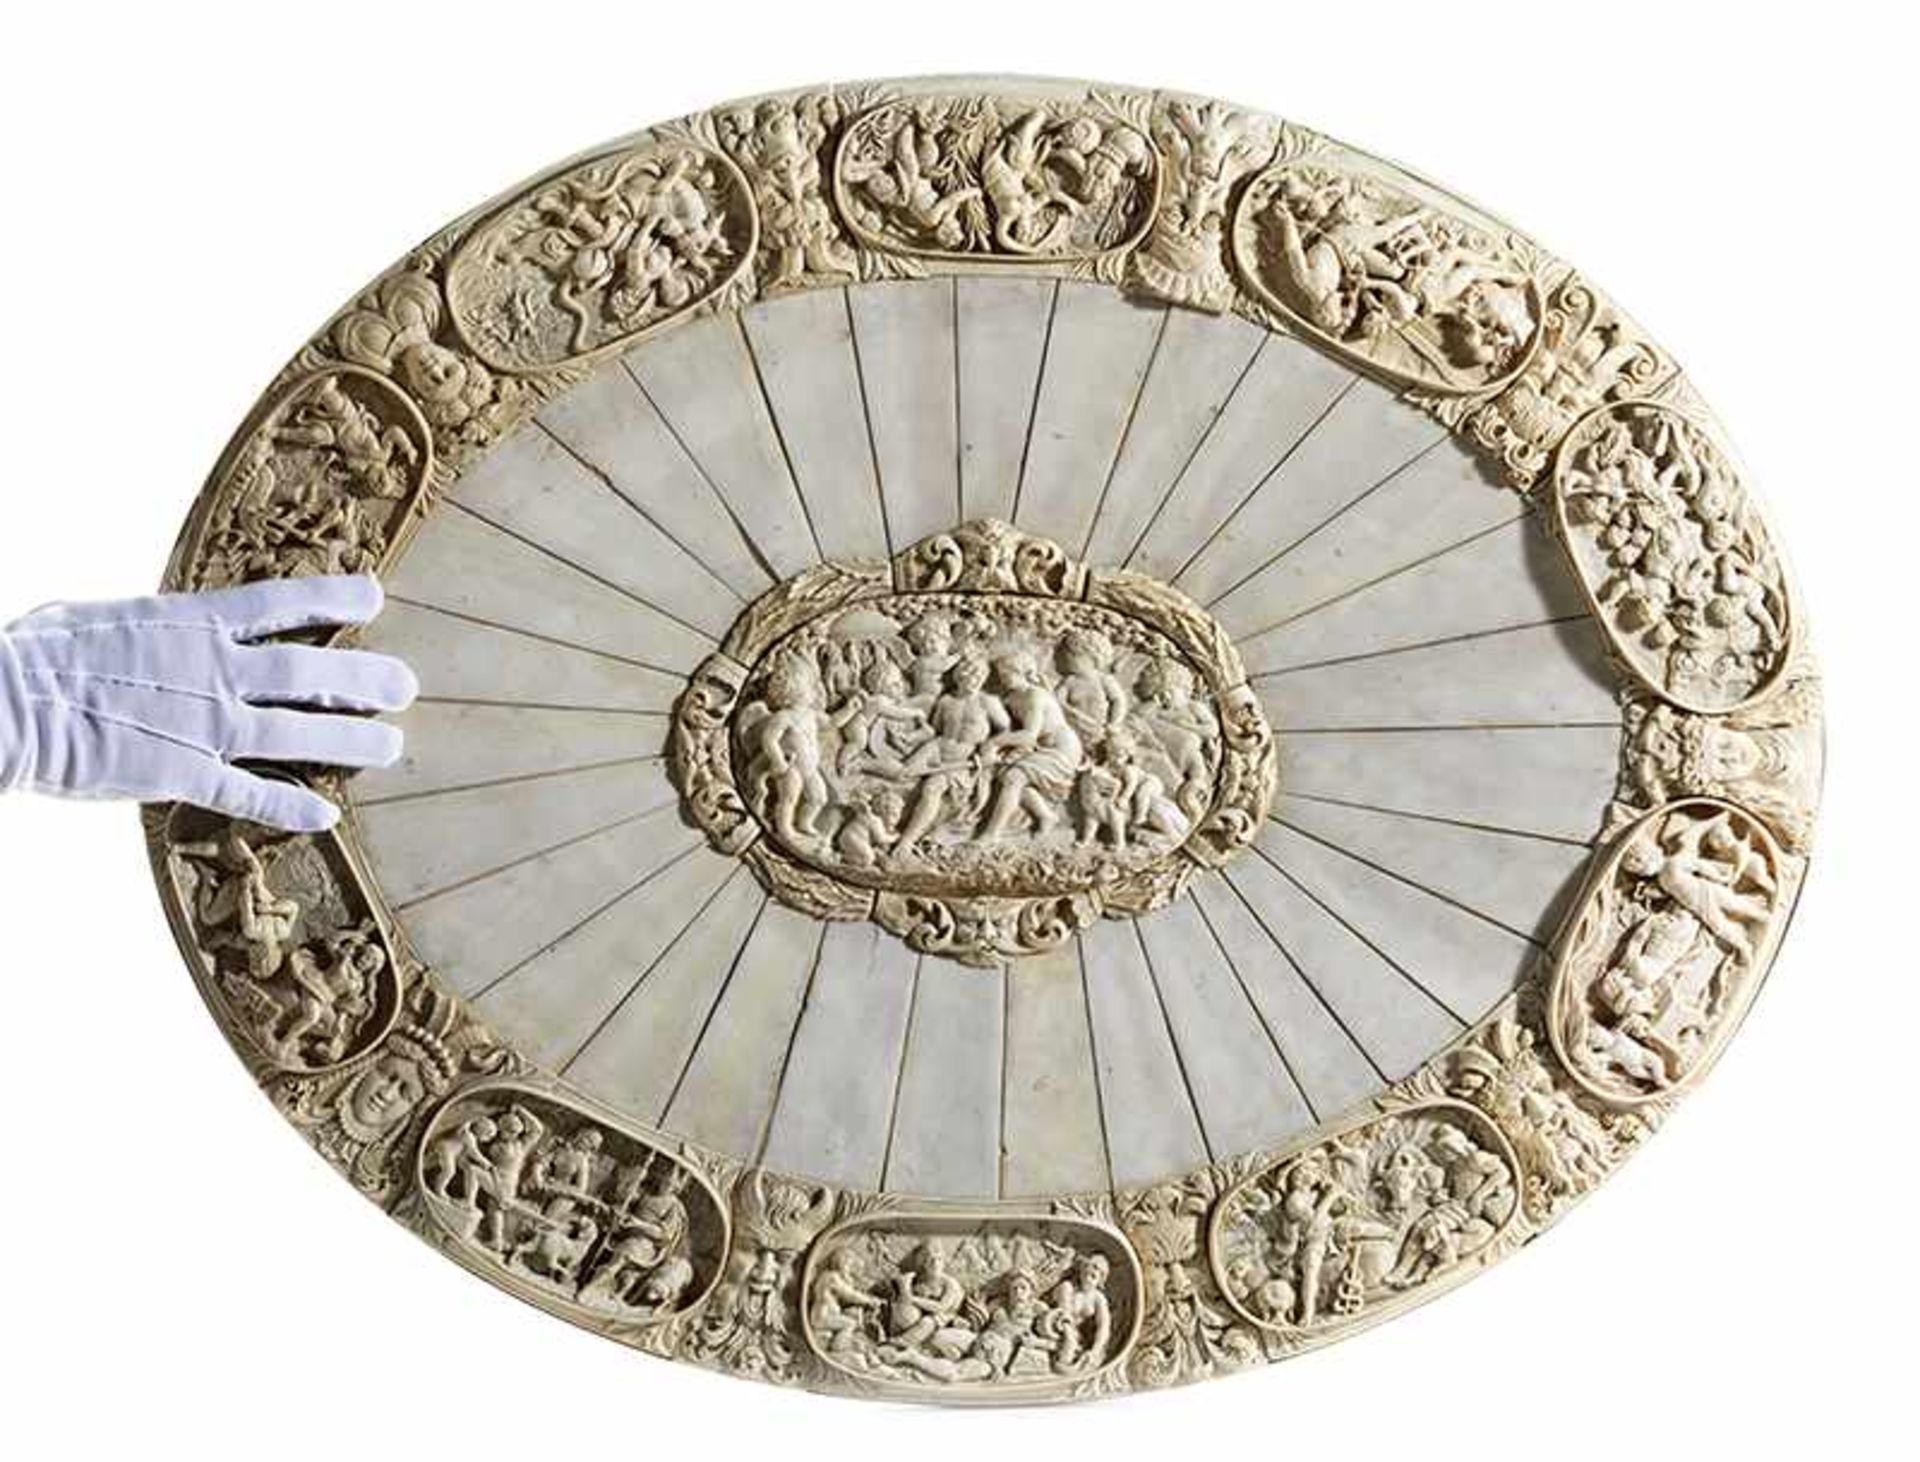 Monumentale äußerst fein gearbeitete ElfenbeinplatteMaximaler Durchmesser: 75 cm. Deutschland, 19. - Bild 6 aus 9